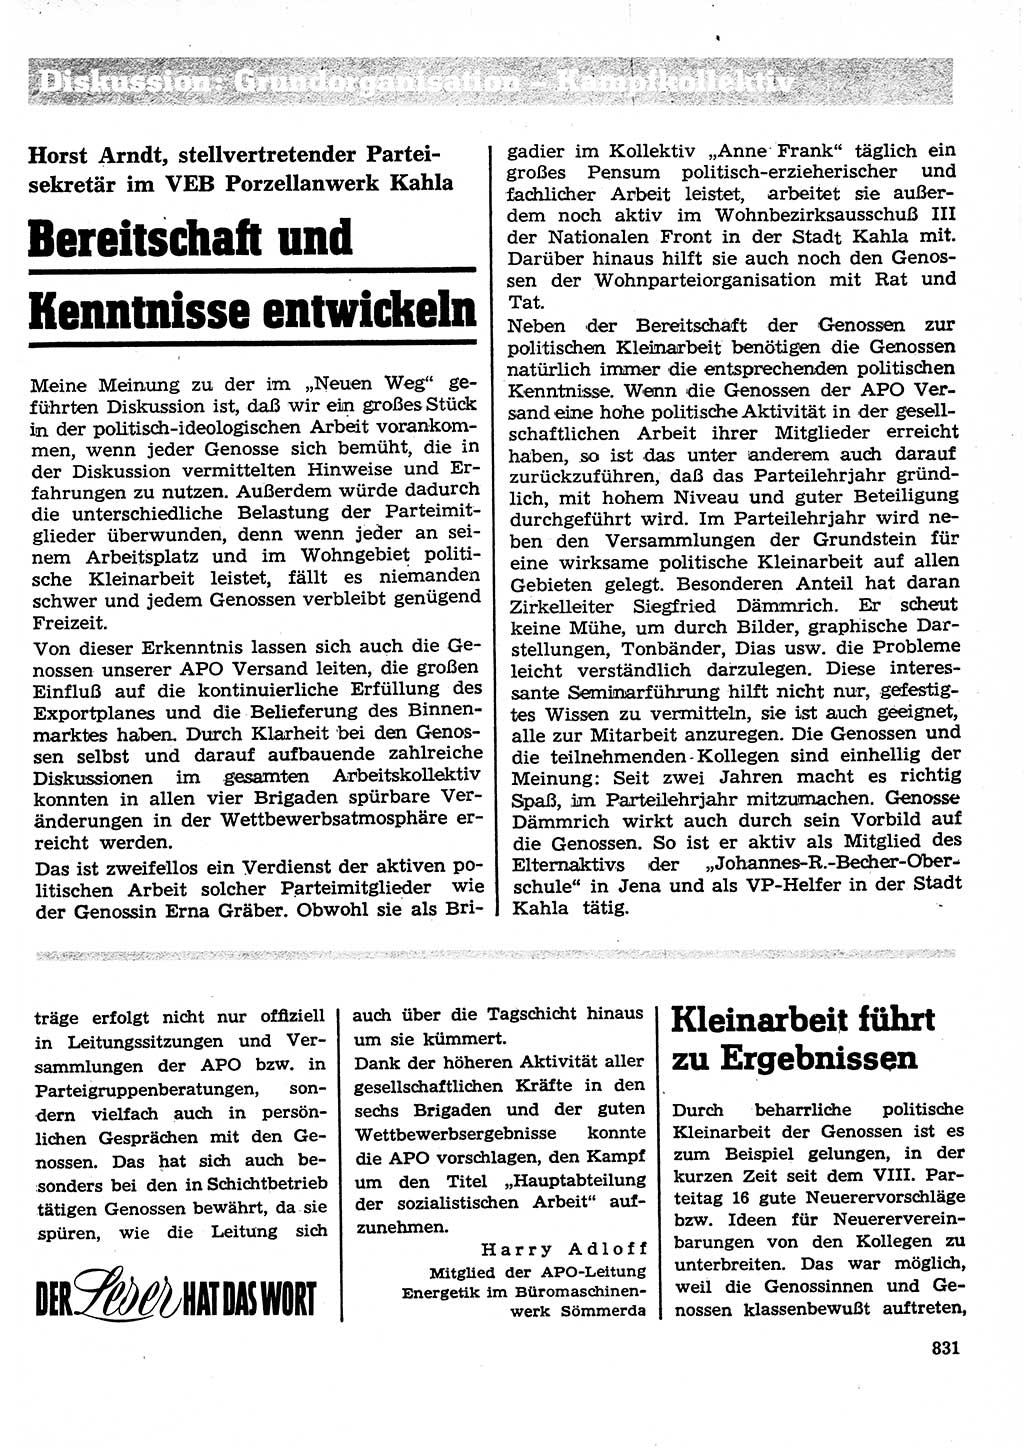 Neuer Weg (NW), Organ des Zentralkomitees (ZK) der SED (Sozialistische Einheitspartei Deutschlands) für Fragen des Parteilebens, 26. Jahrgang [Deutsche Demokratische Republik (DDR)] 1971, Seite 831 (NW ZK SED DDR 1971, S. 831)